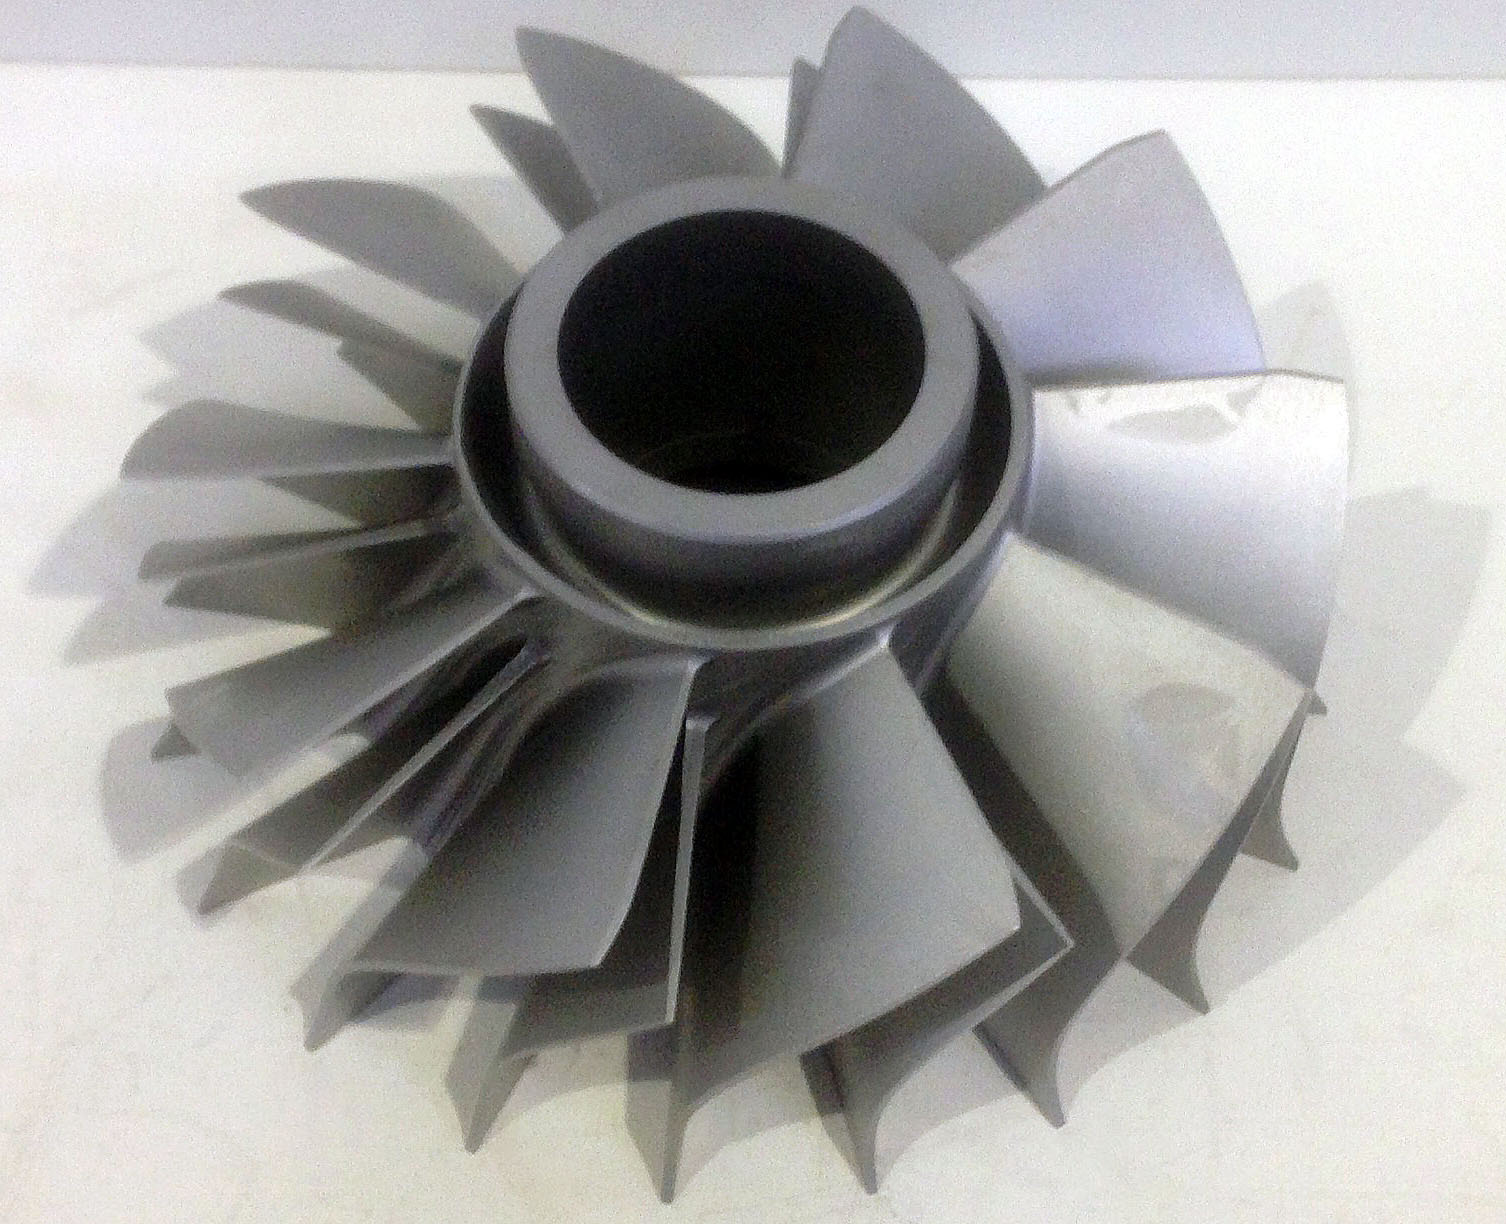 R354 Inducer wheel